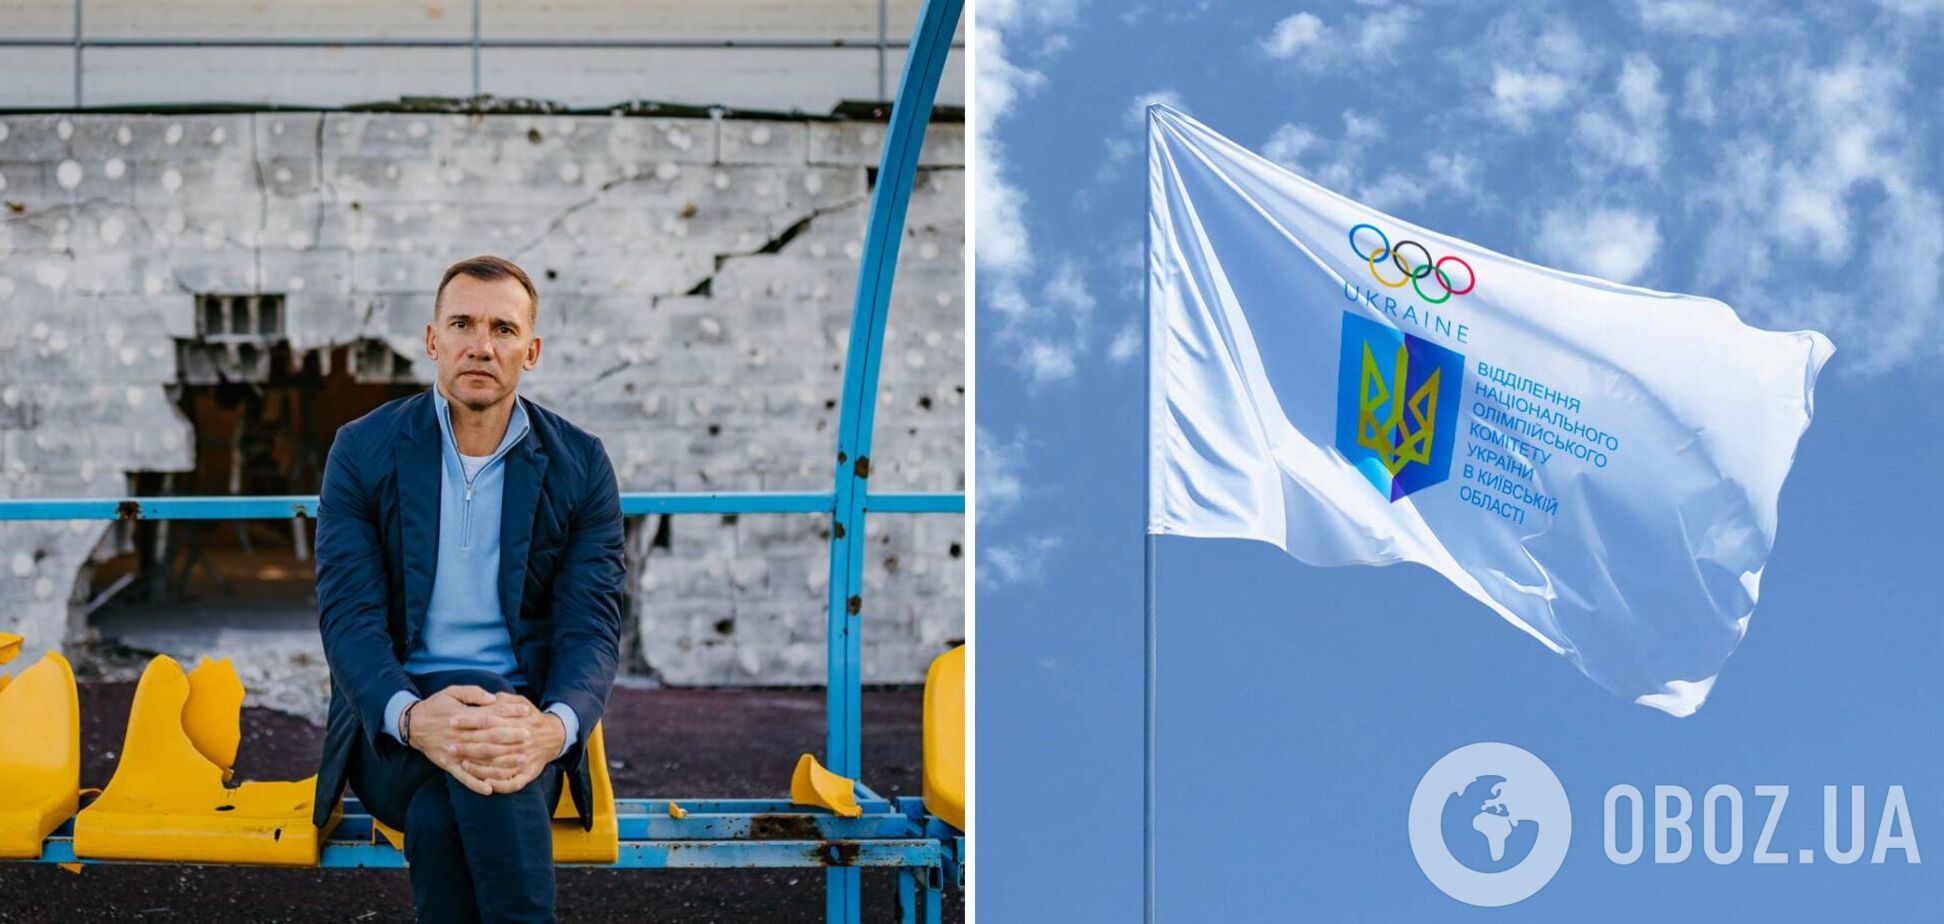 'Не могу остаться при таком составе': Шевченко спустя сутки объявил о выходе из НОК Украины